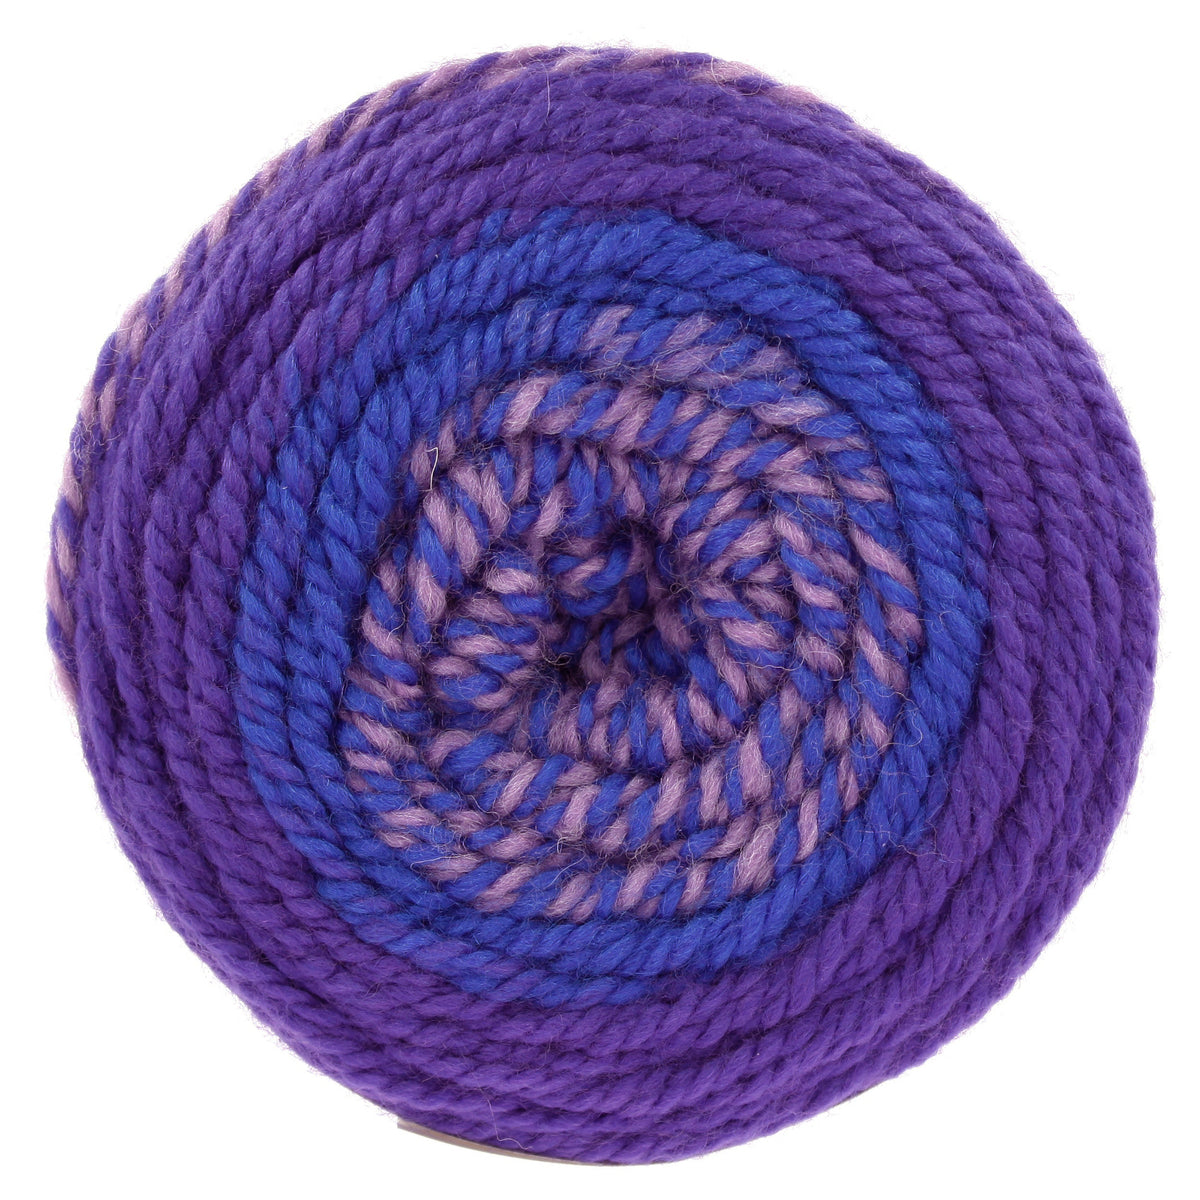 Knitter's Pride-Basix Birch Crochet Hook -Size 7mm